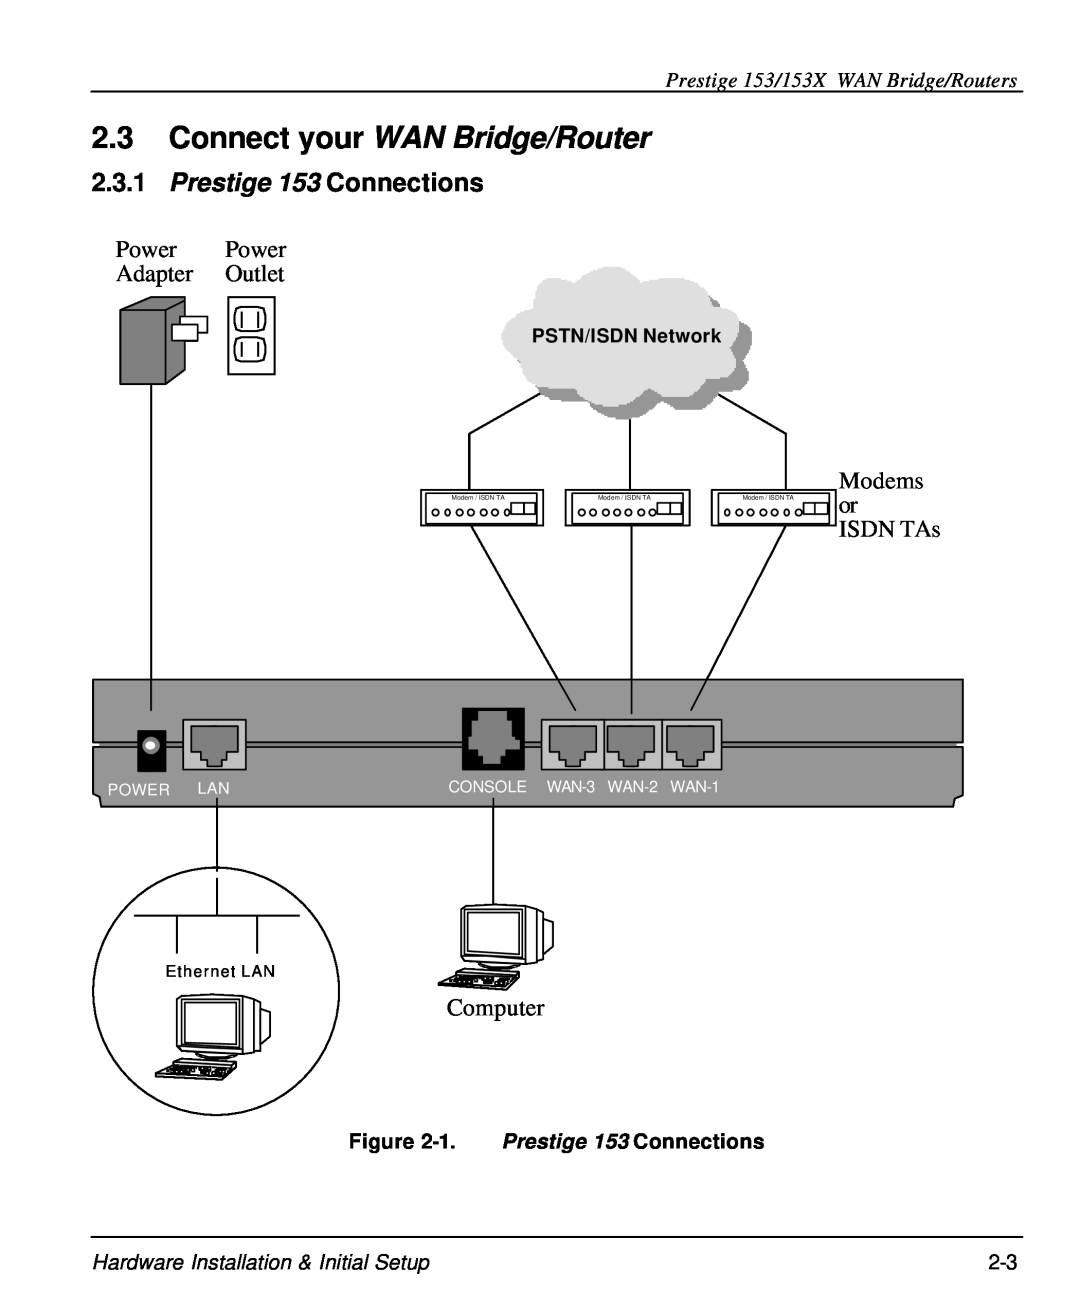 ZyXEL Communications Connect your WAN Bridge/Router, Prestige 153 Connections, Prestige 153/153X WAN Bridge/Routers 